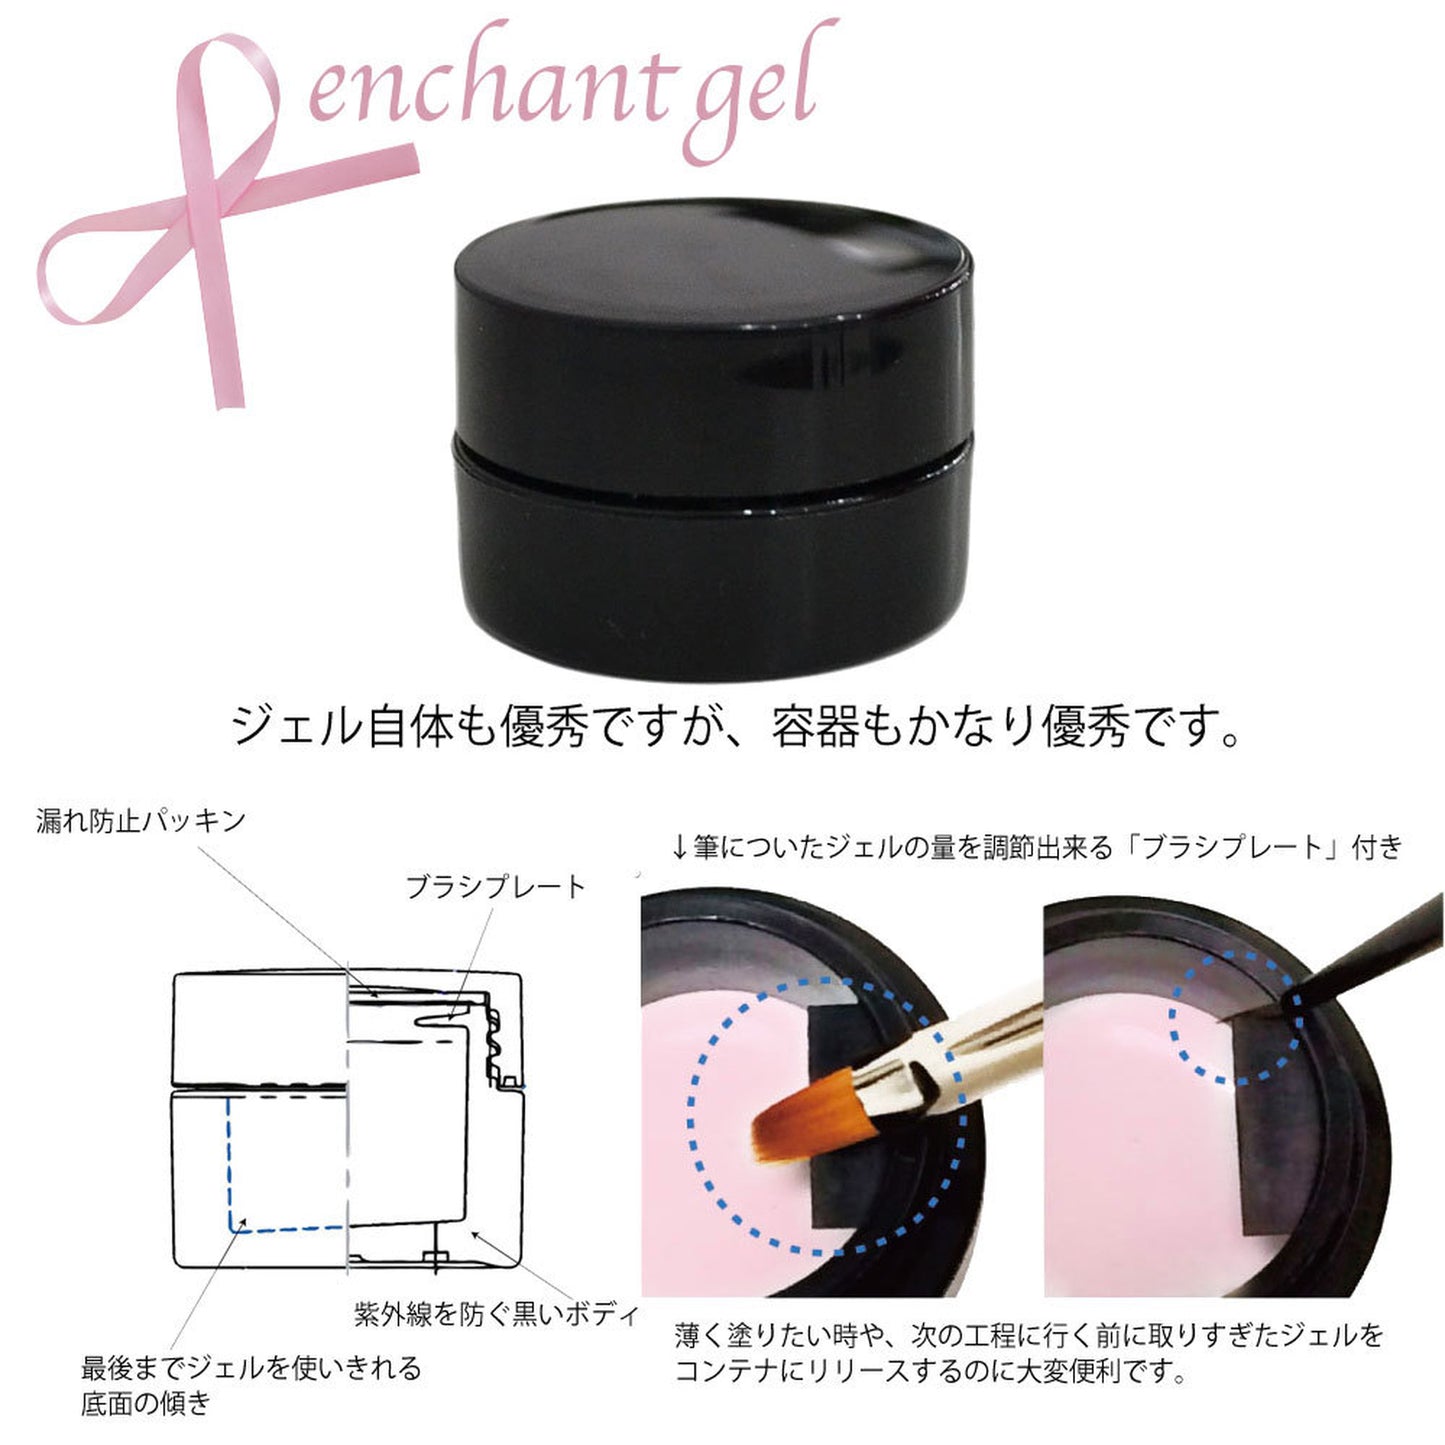 ハードジェルクリアー 10グラム　 エンチャントジェル／【お徳用10g】enchant gel clear hard gel 10g